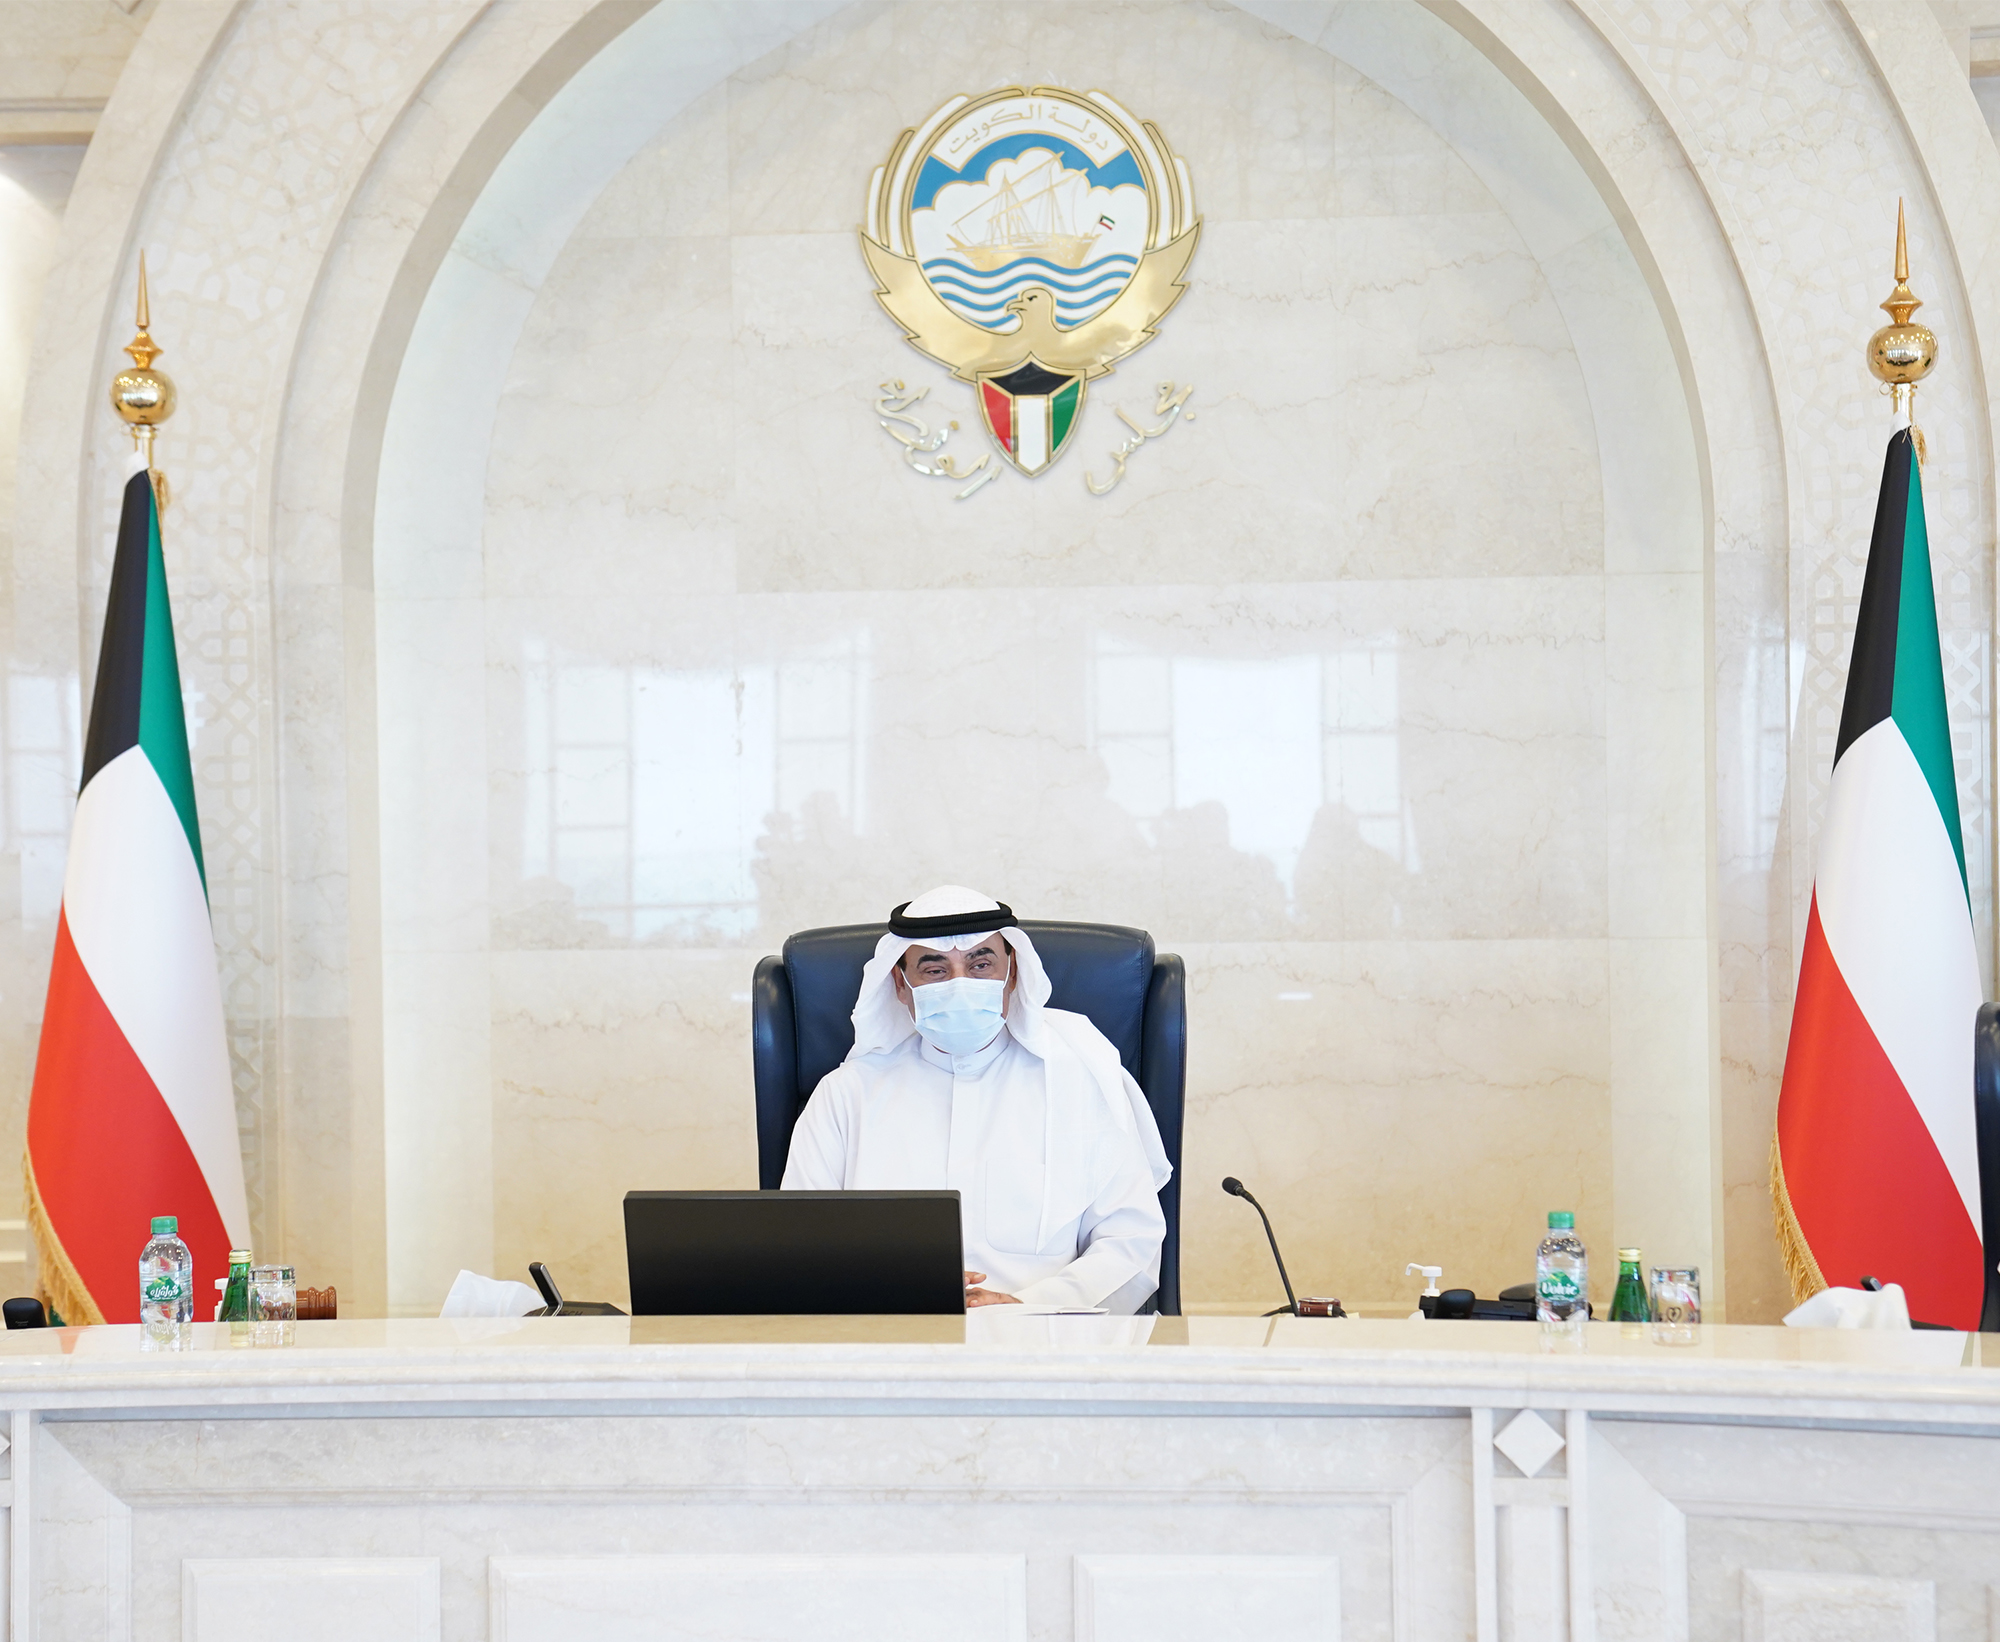 سمو الشيخ صباح خالد الحمد الصباح رئيس مجلس الوزراء خلال الاجتماع